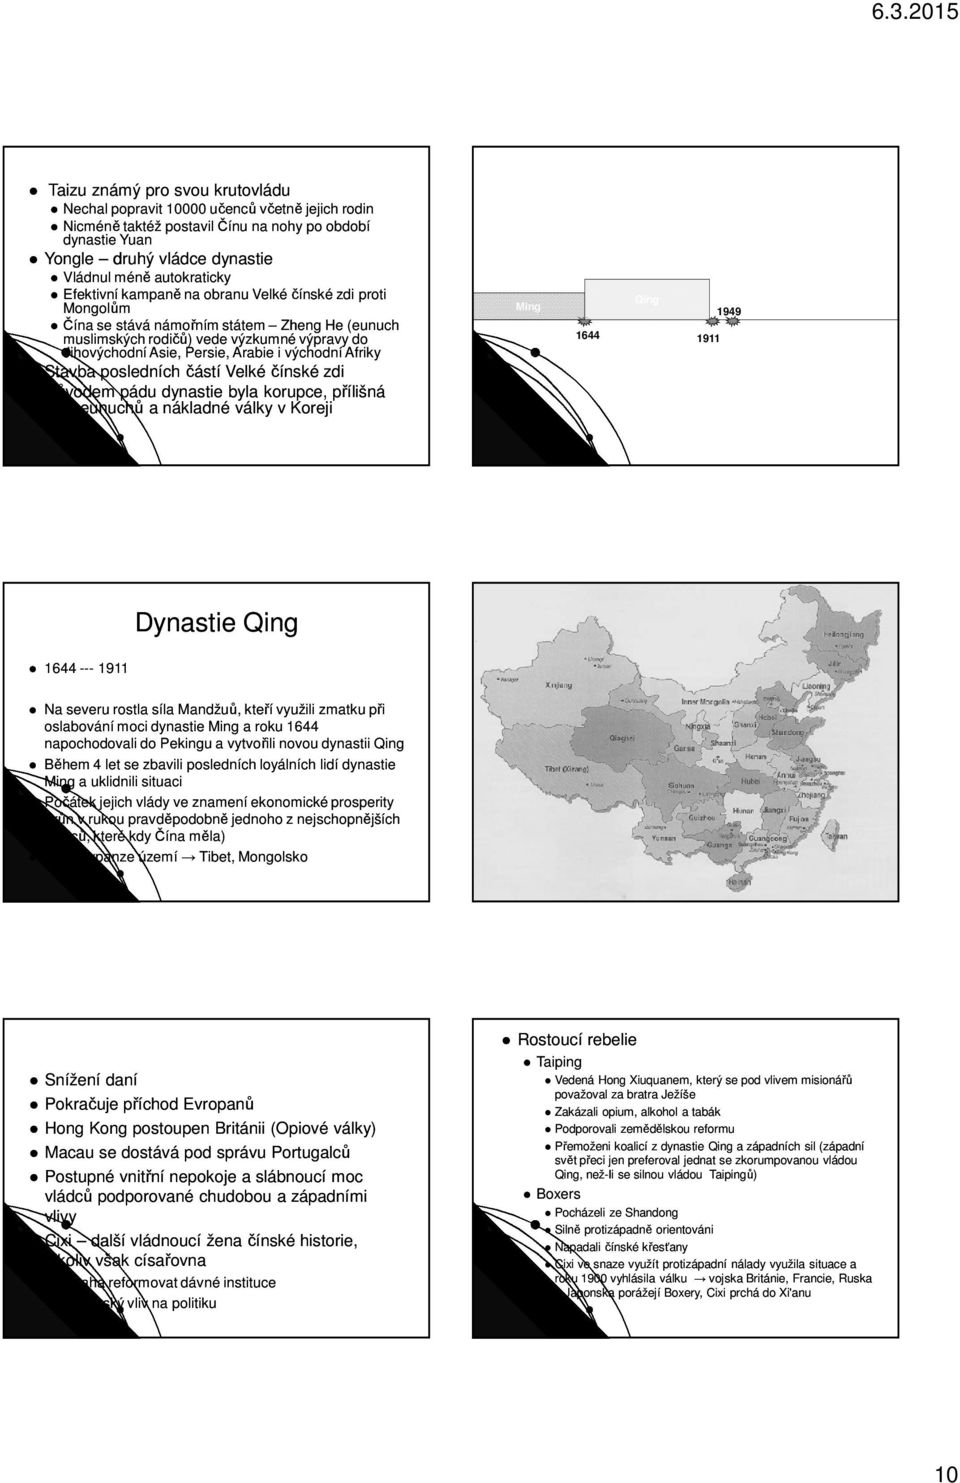 Afriky Stavba posledních částí Velké čínské zdi Důvodem pádu dynastie byla korupce, přílišná moc eunuchů a nákladné války v Koreji Ming Qing 1644 1911 1949 1644 --- 1911 Dynastie Qing Na severu